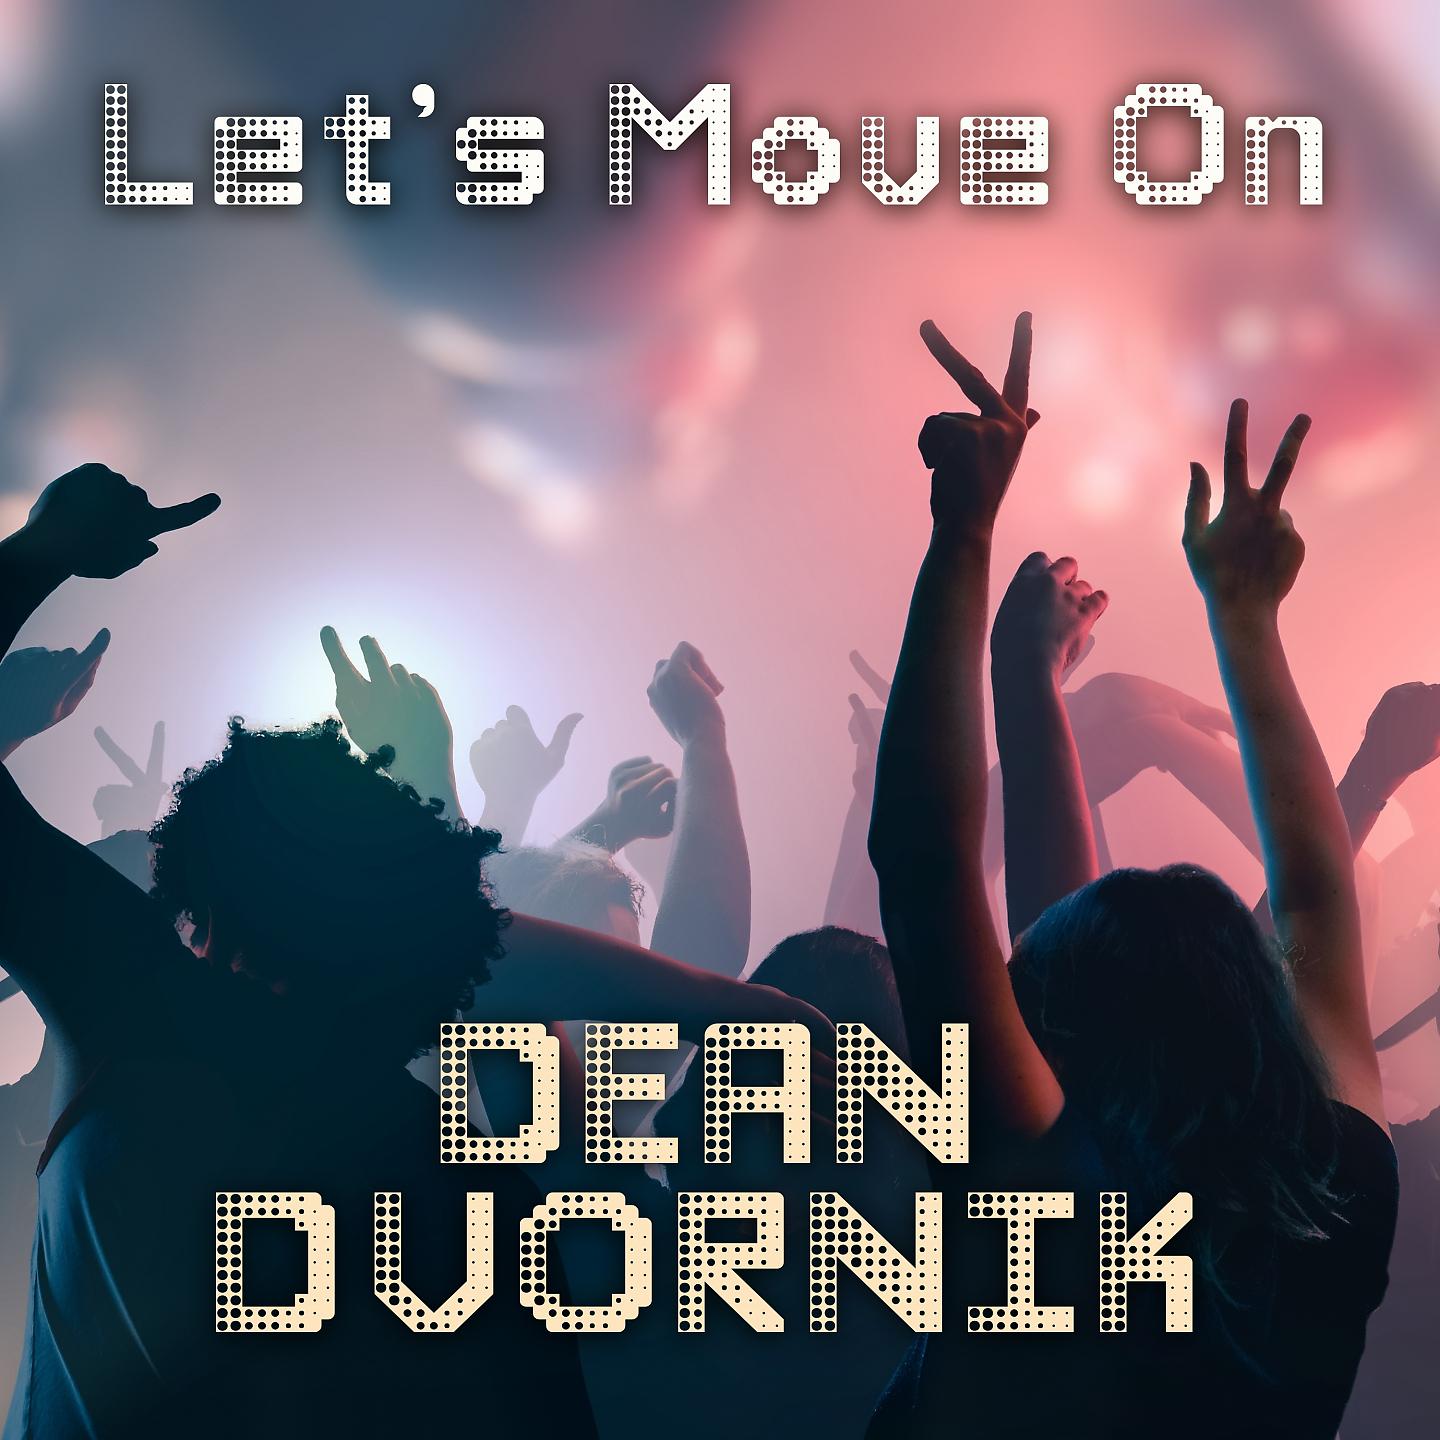 Постер альбома Let's Move On